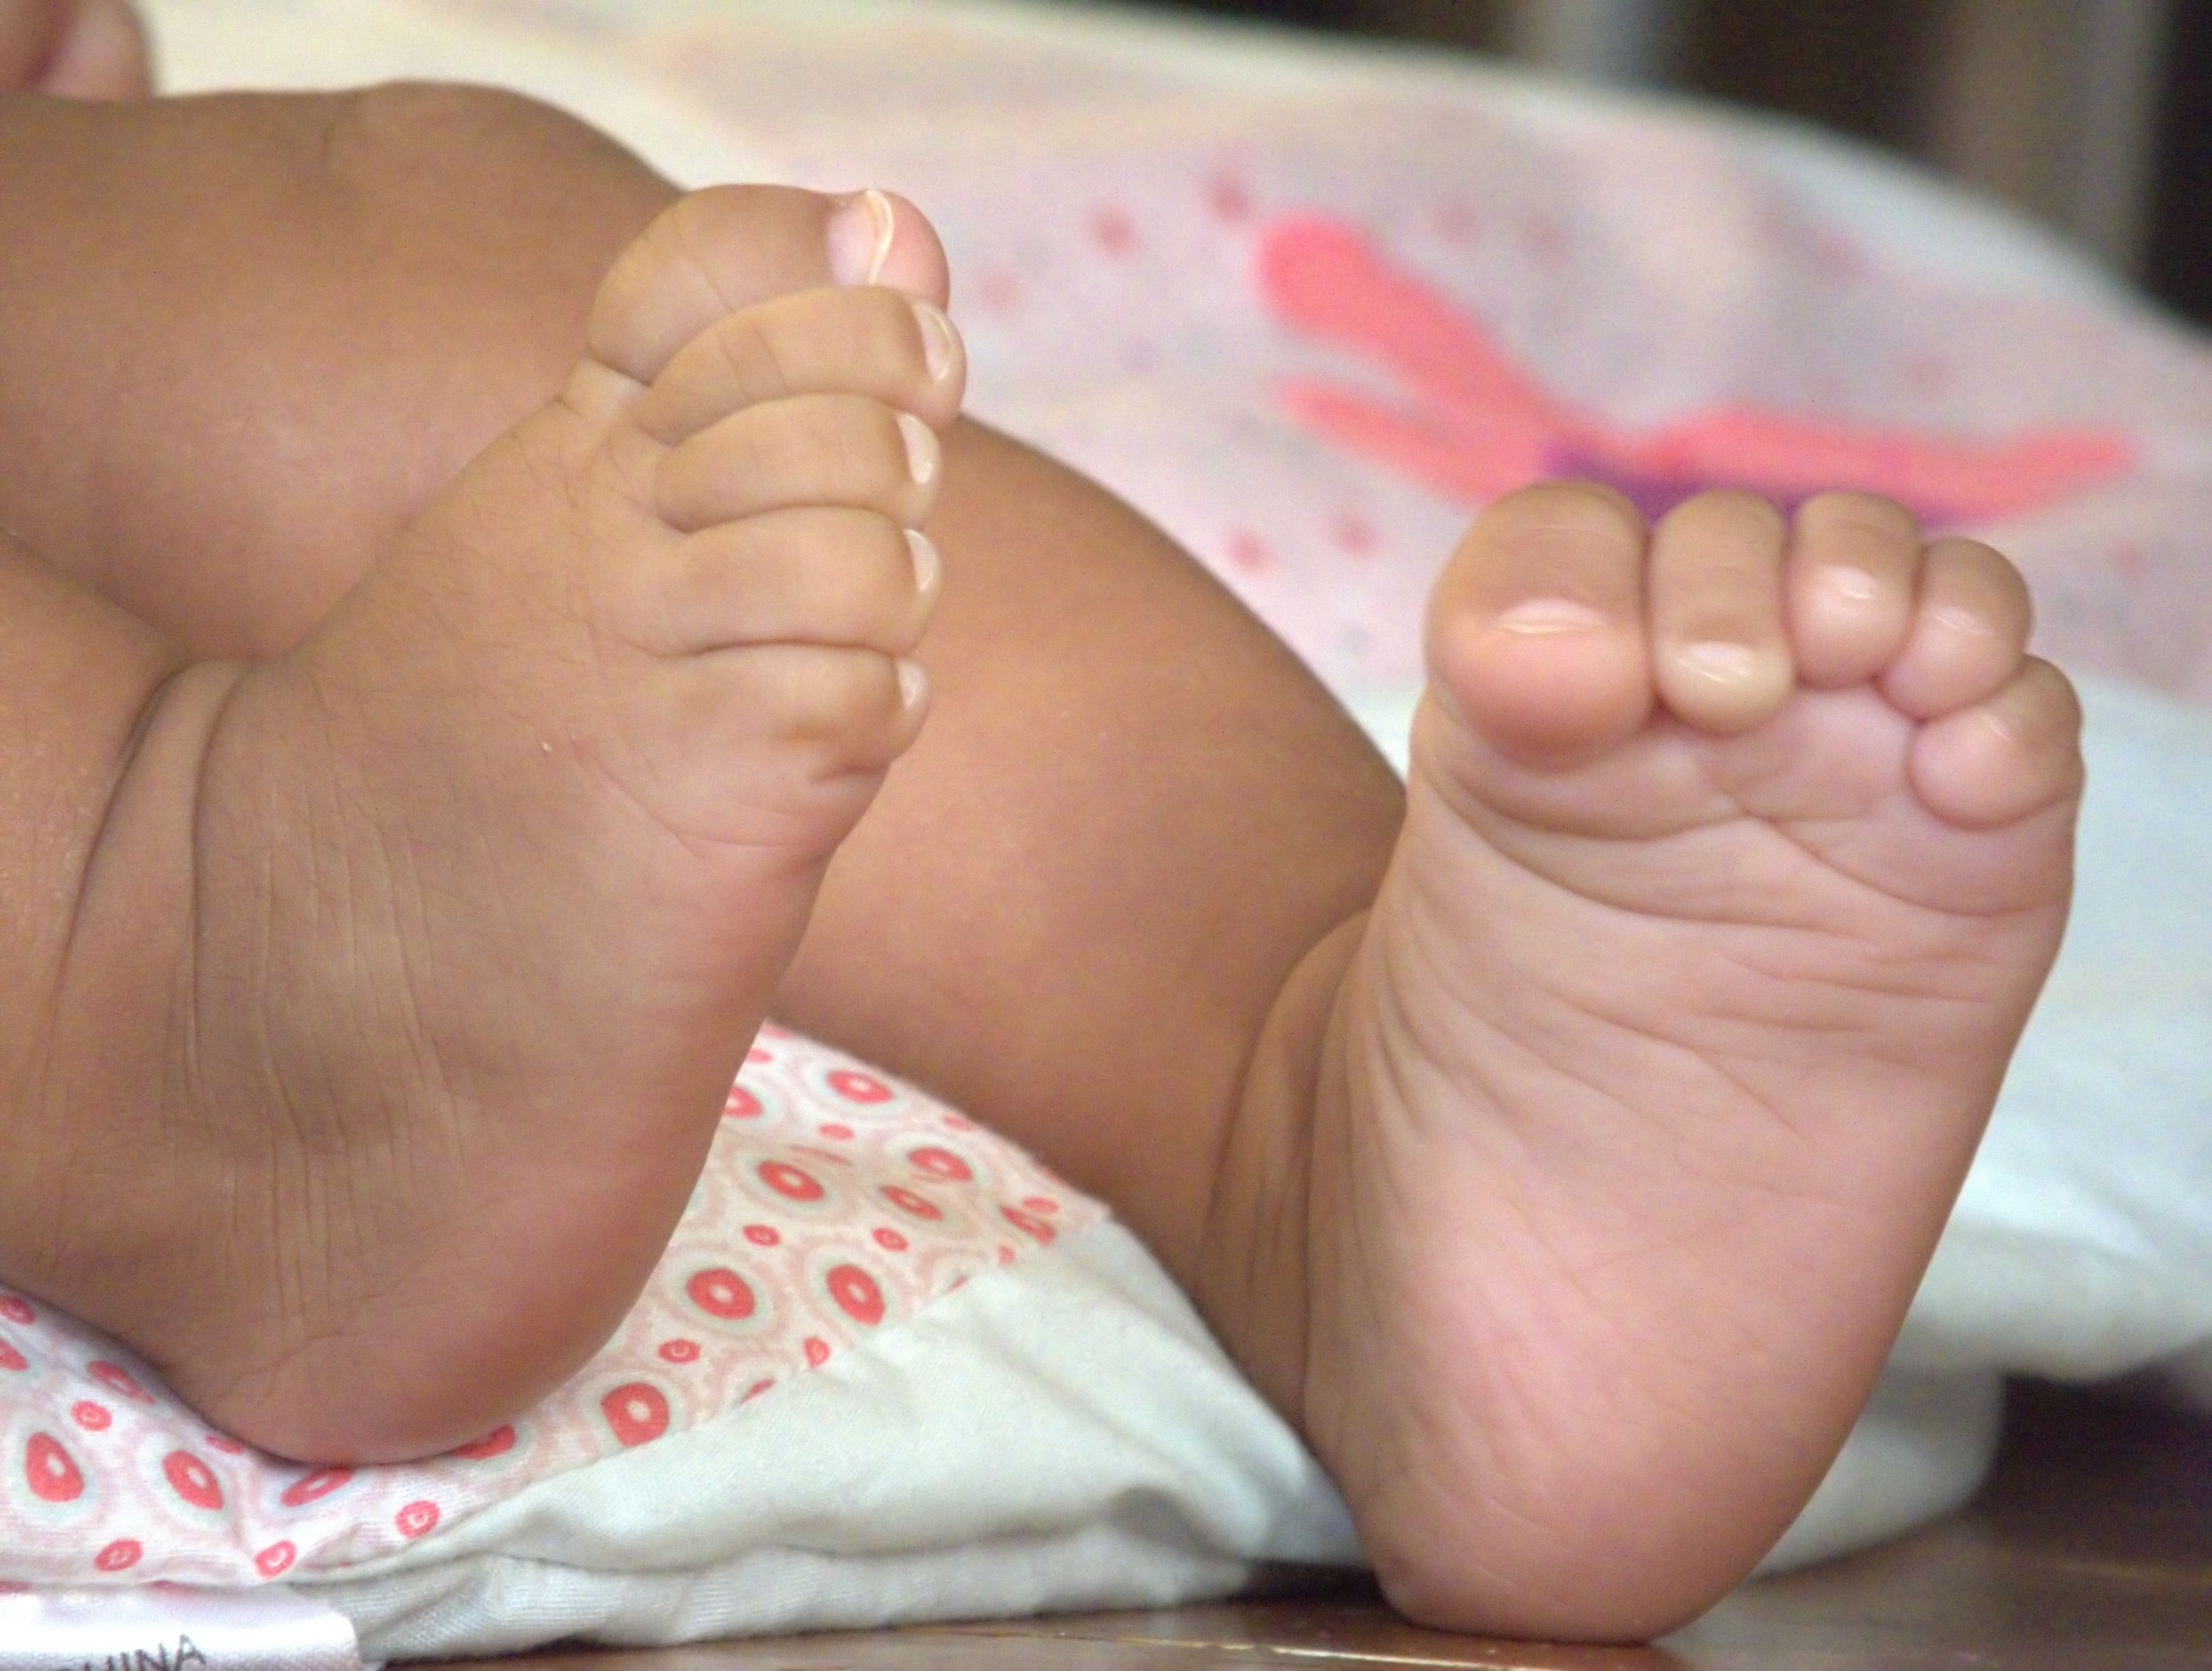     « Les 1000 premiers jours » : mieux préparer le capital santé de son enfant 

